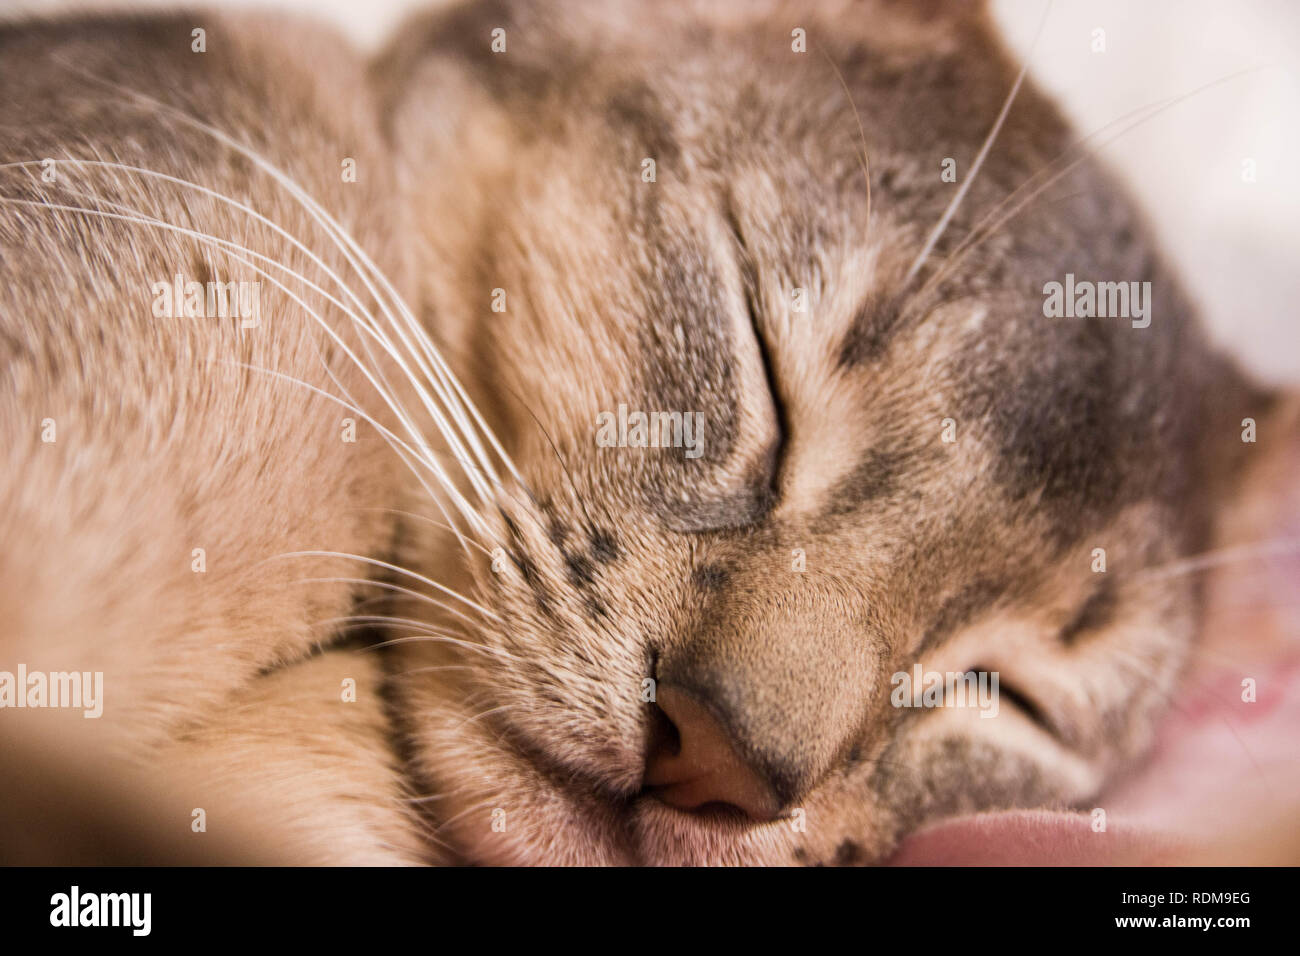 Le visage endormi d'un mignon petit chat abyssin, selective focus. Banque D'Images